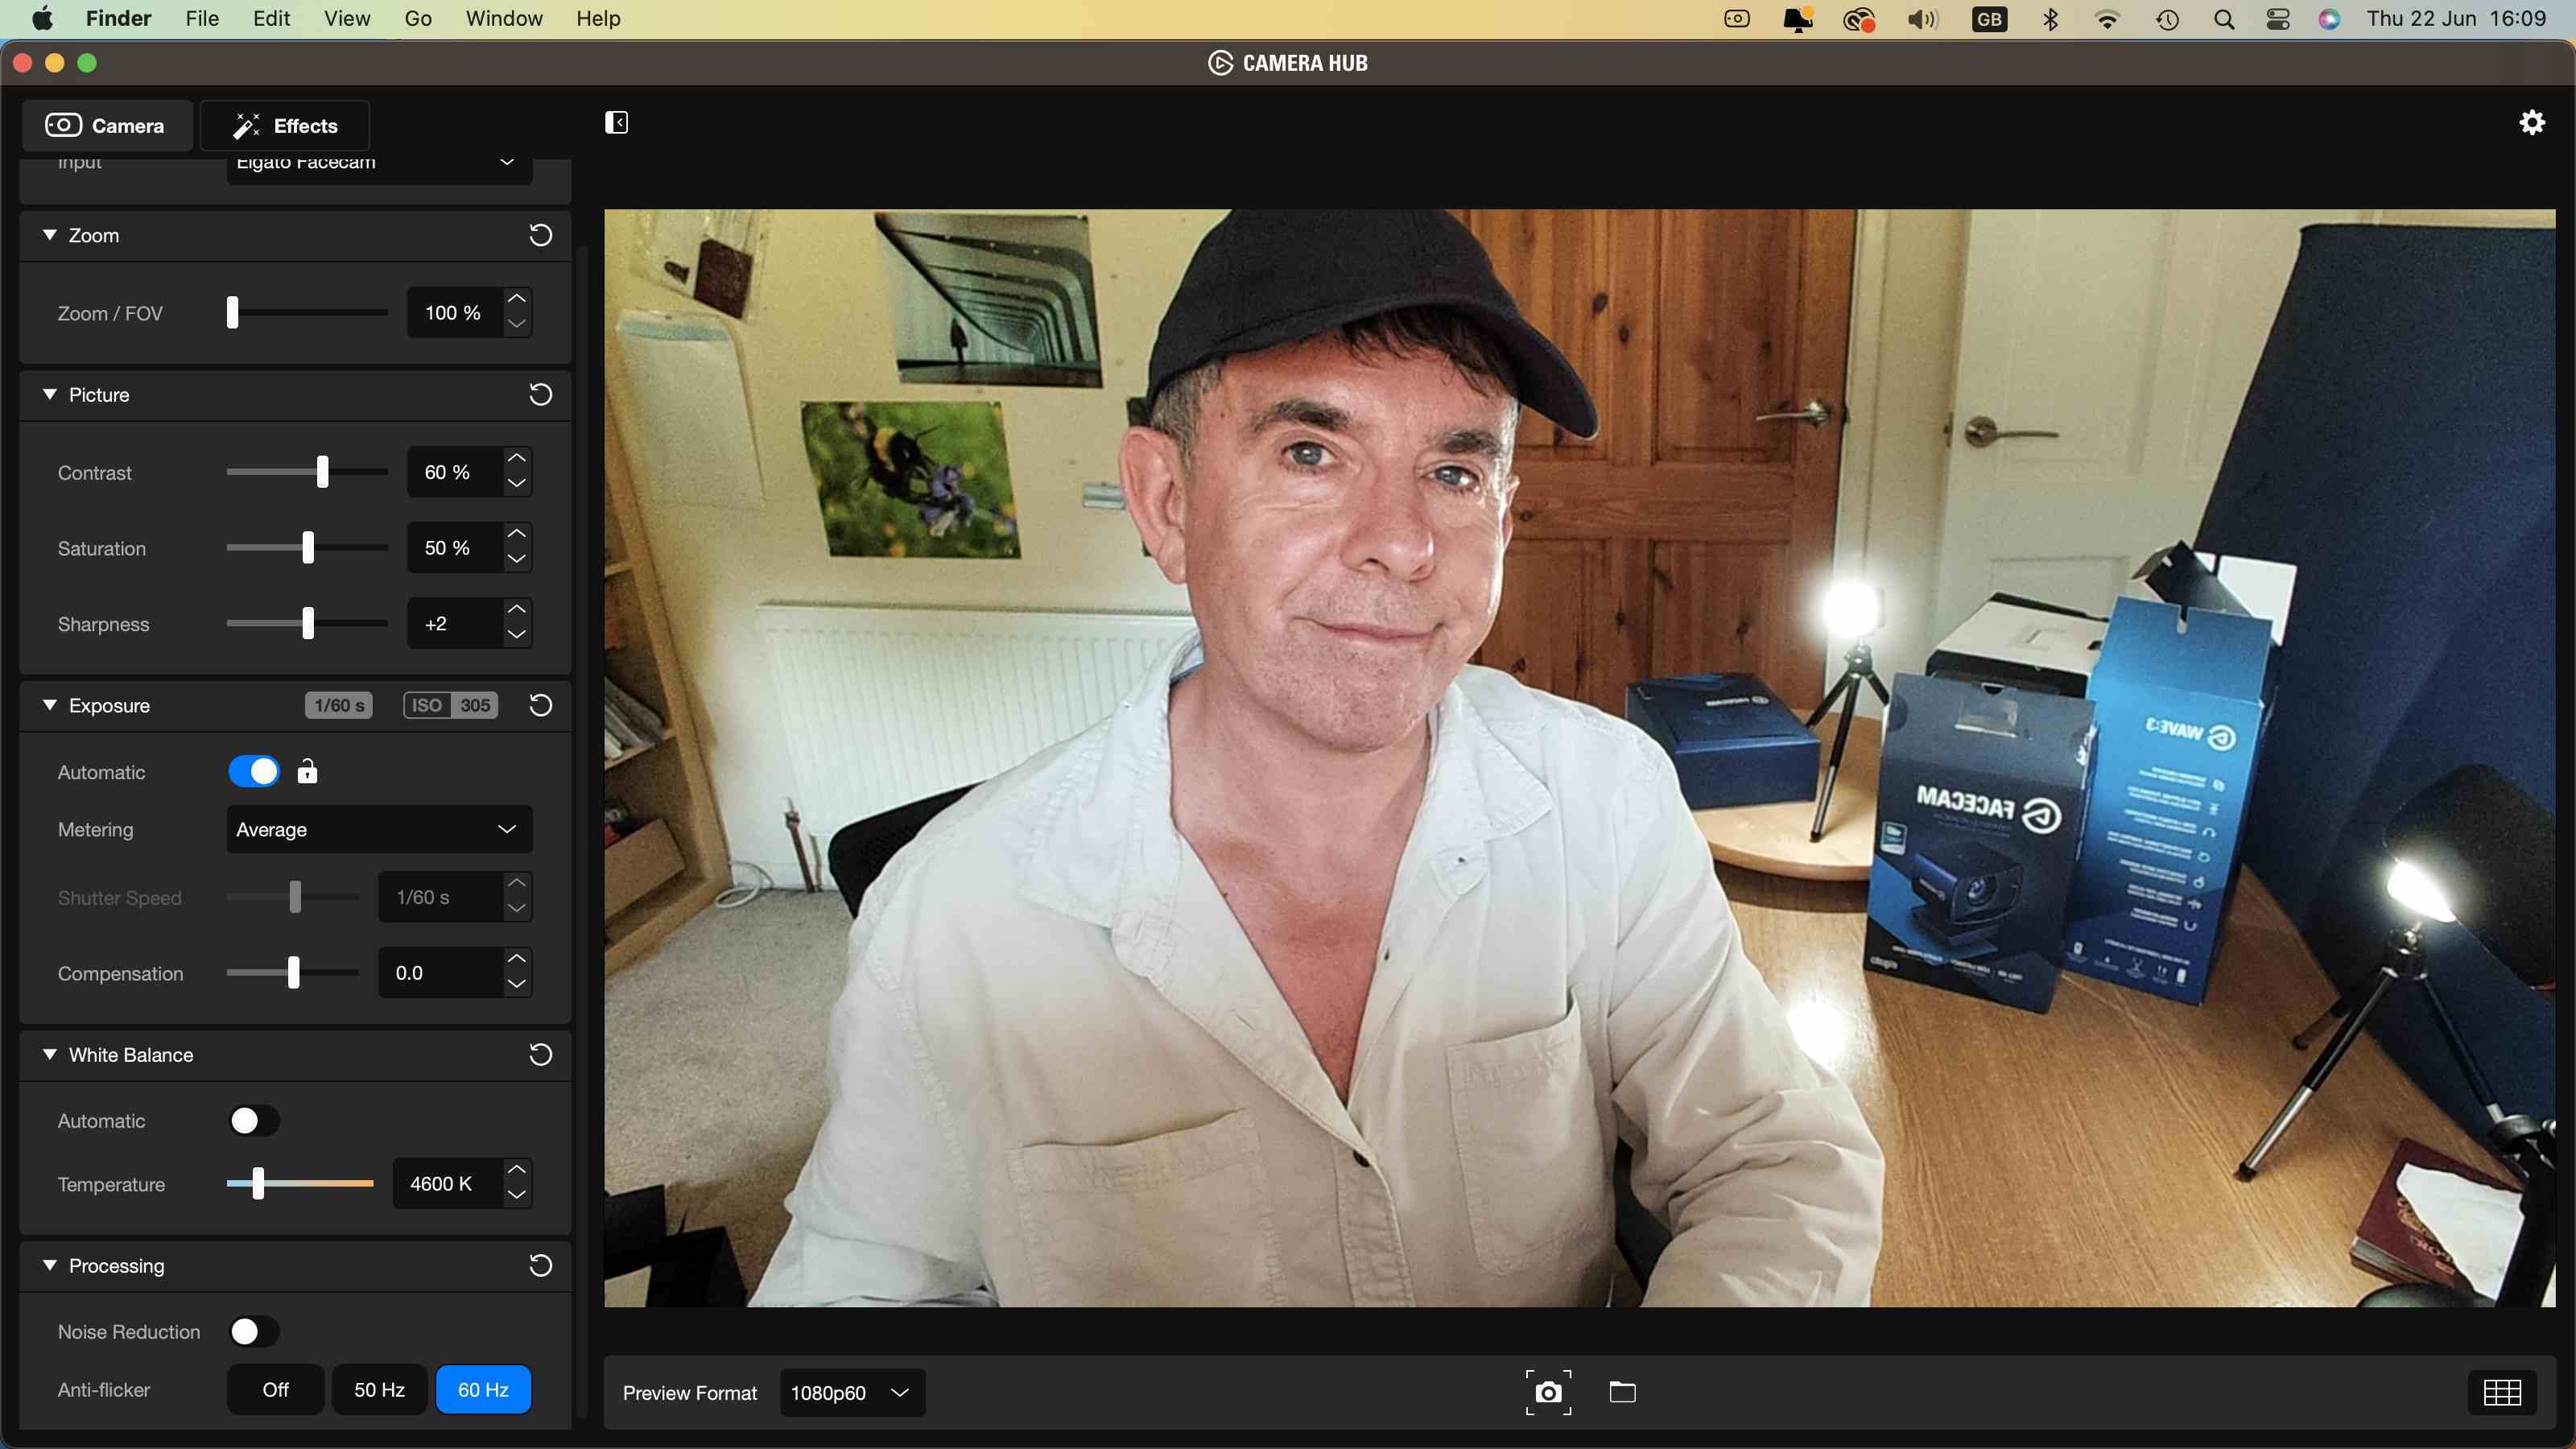 Ünlü yorumcu George Cairns'in Kamera Hub'ındaki web kamerası aracılığıyla görüldüğü şekliyle Elgato Facecam inceleme görüntüsü.